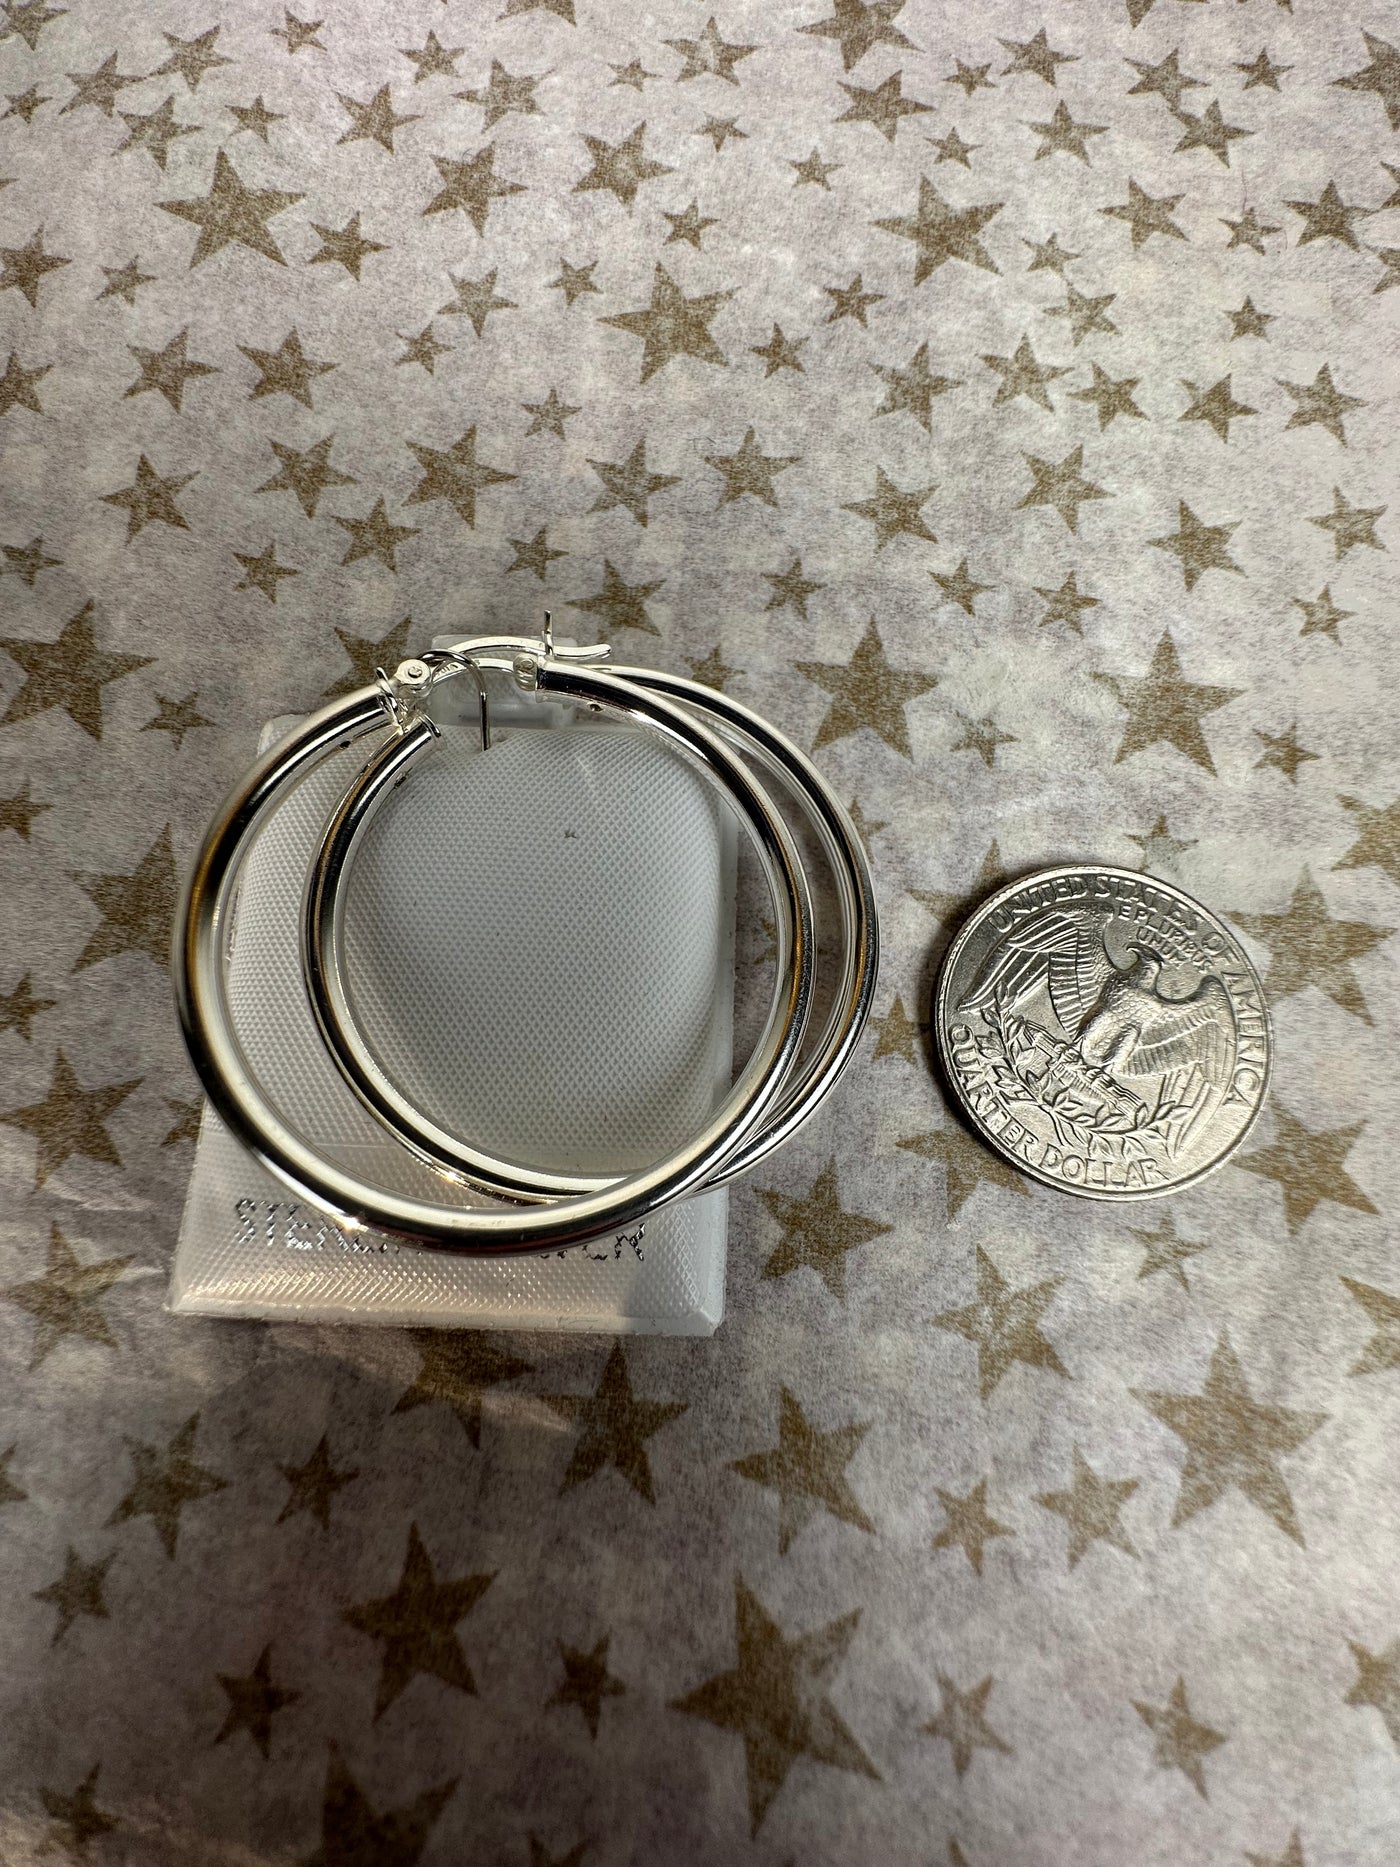 Sterling Silver Round Hoop Earrings 2.5mm x 35mm